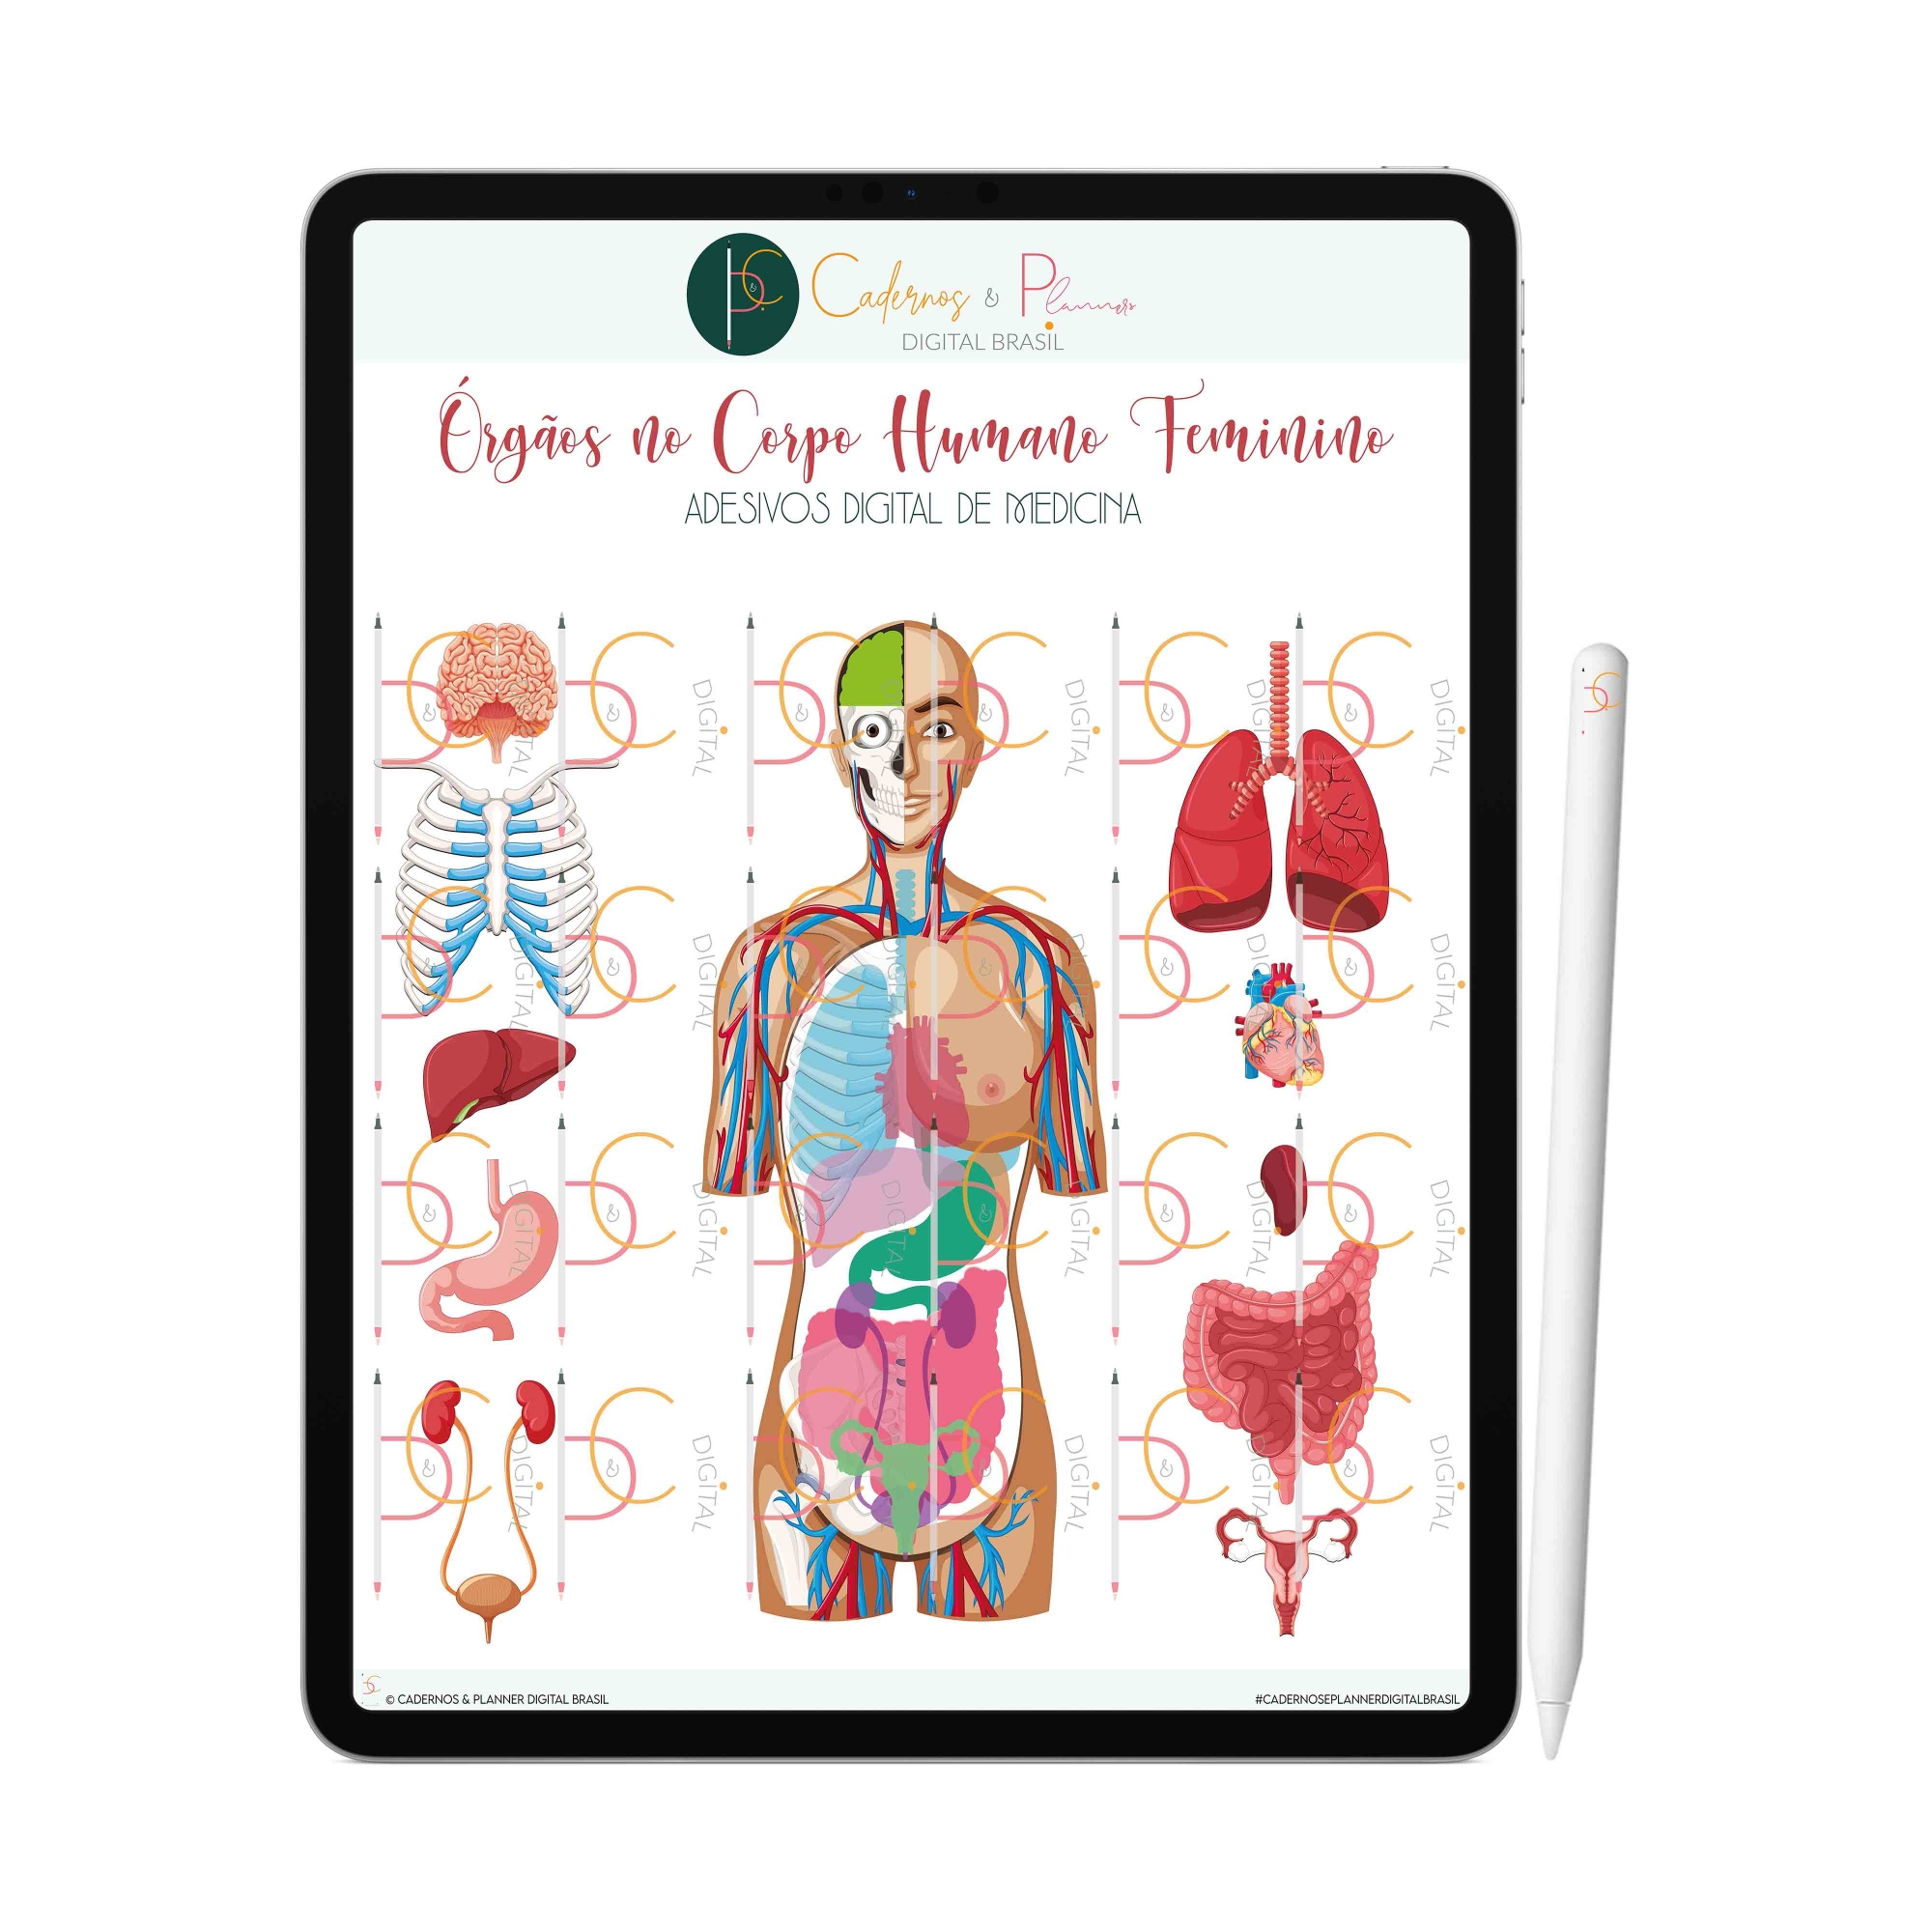 Adesivos Digital de Medicina - Órgãos no Corpo Humano Feminino | iPad Tablet | Download Instantâneo